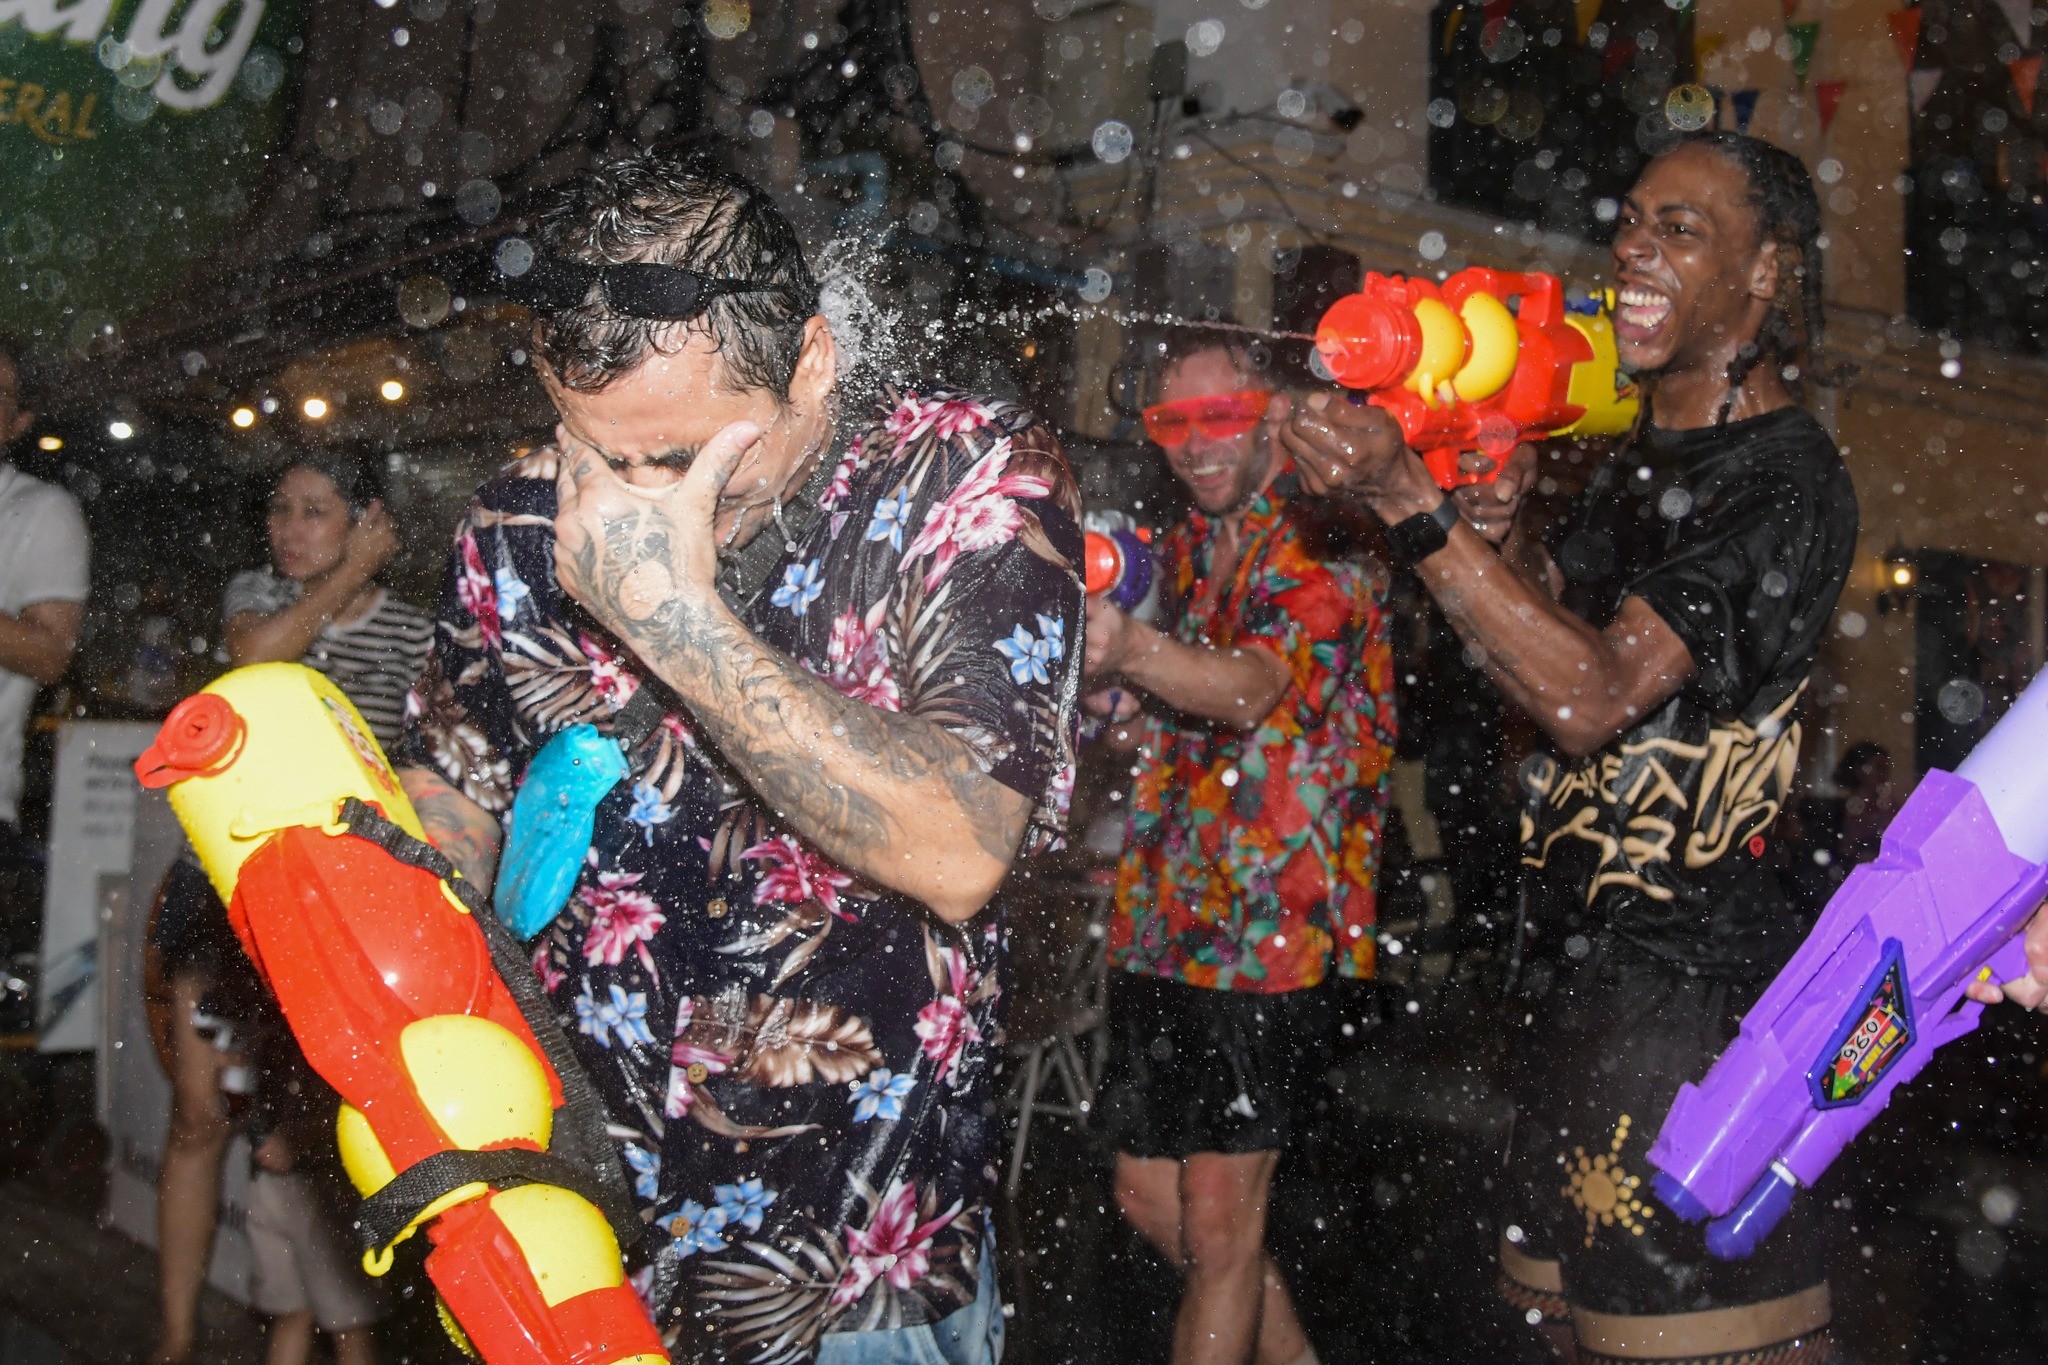 Có gần 200 địa điểm trên khắp Bangkok sẽ tổ chức những hoạt động giải trí cho lễ hội Songkran. Chính quyền Bangkok đã công bố hướng dẫn về lễ hội Songkran gồm không uống rượu bia khi lái xe, mặc trang phục thích hợp, không bật loa có dung lượng lớn, vứt bột lên người khác, sử dụng súng nước có áp suất mạnh.